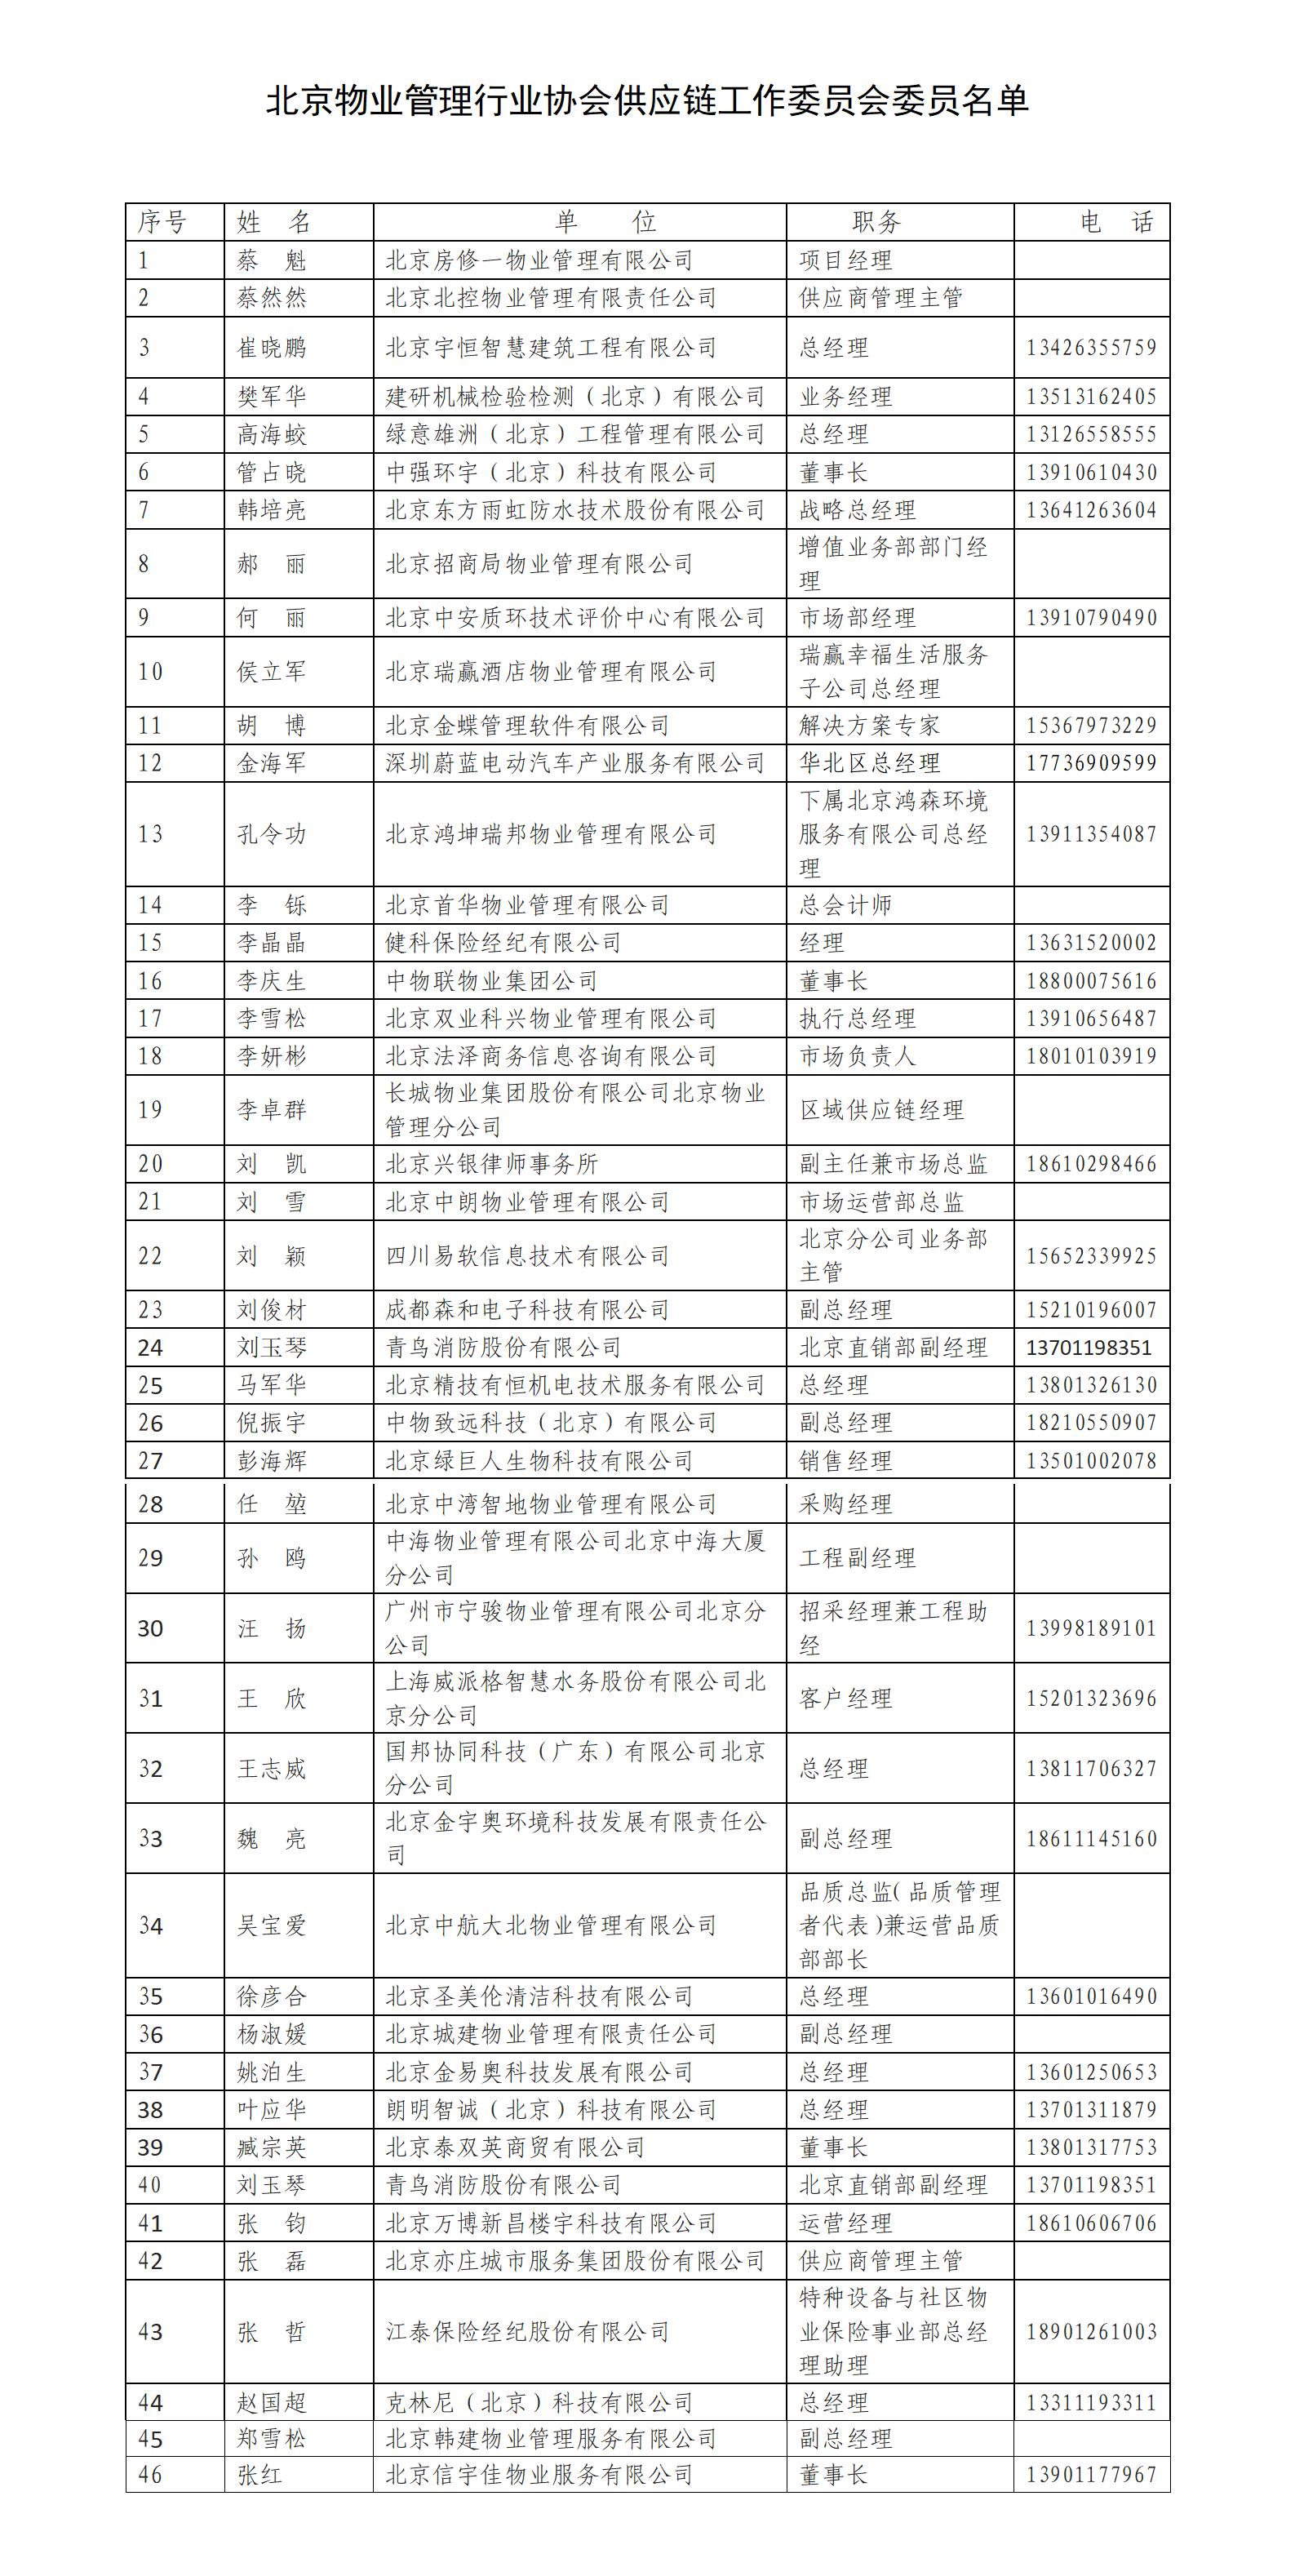 供应链委员名单(3)_01.jpg